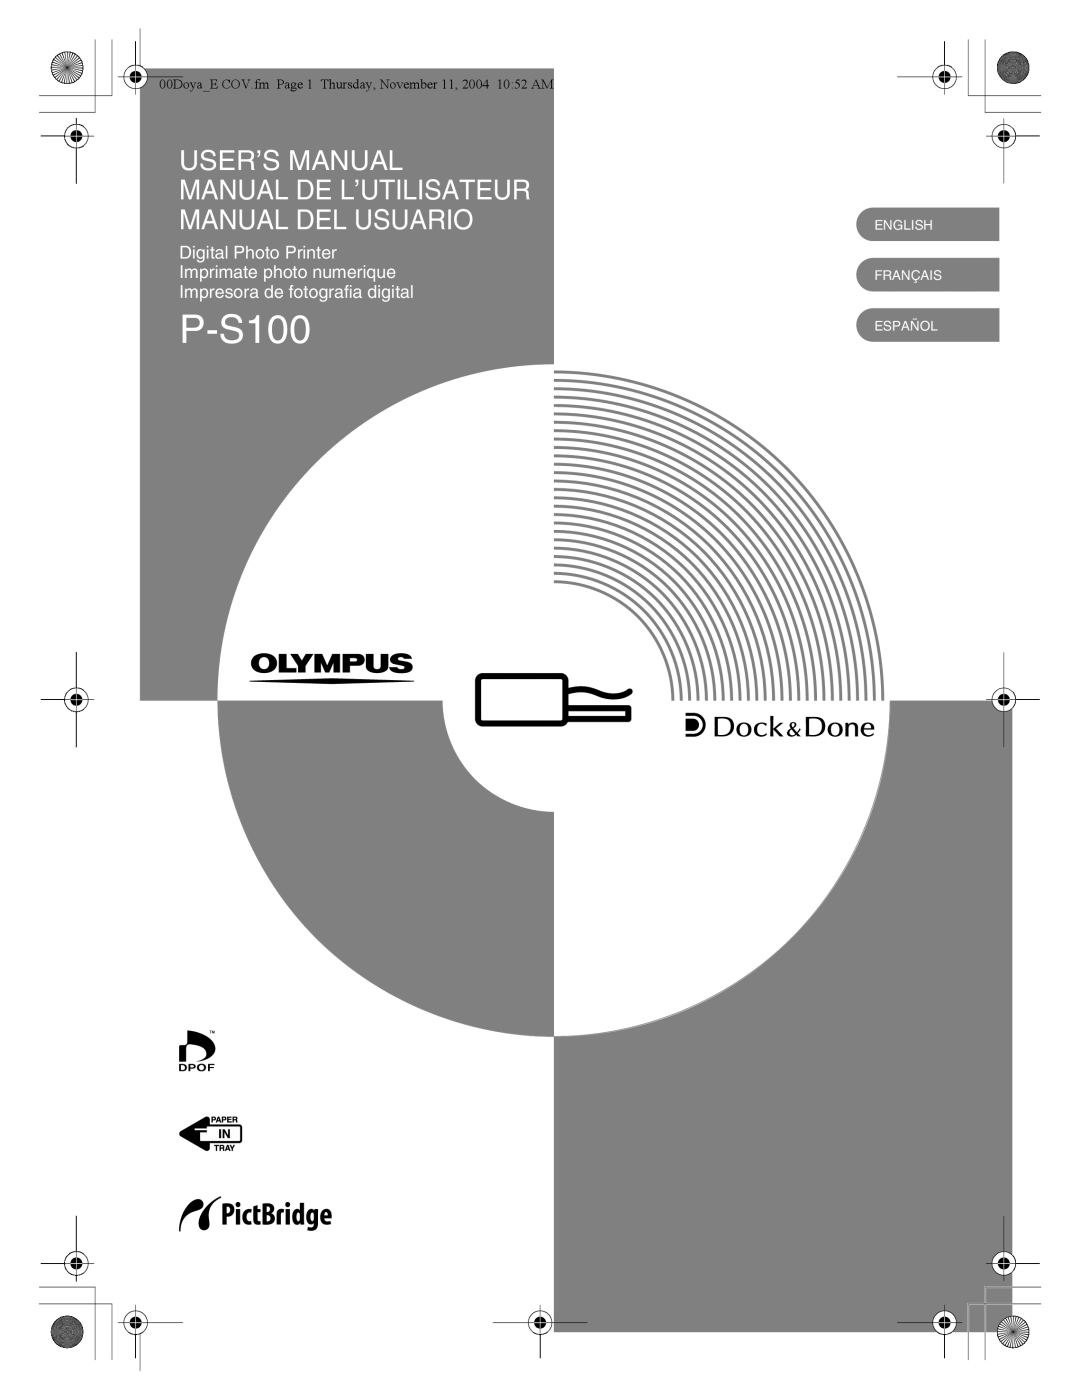 Olympus P-S100 user manual User’S Manual, Manual De L’Utilisateur Manual Del Usuario, Impresora de fotografia digital 